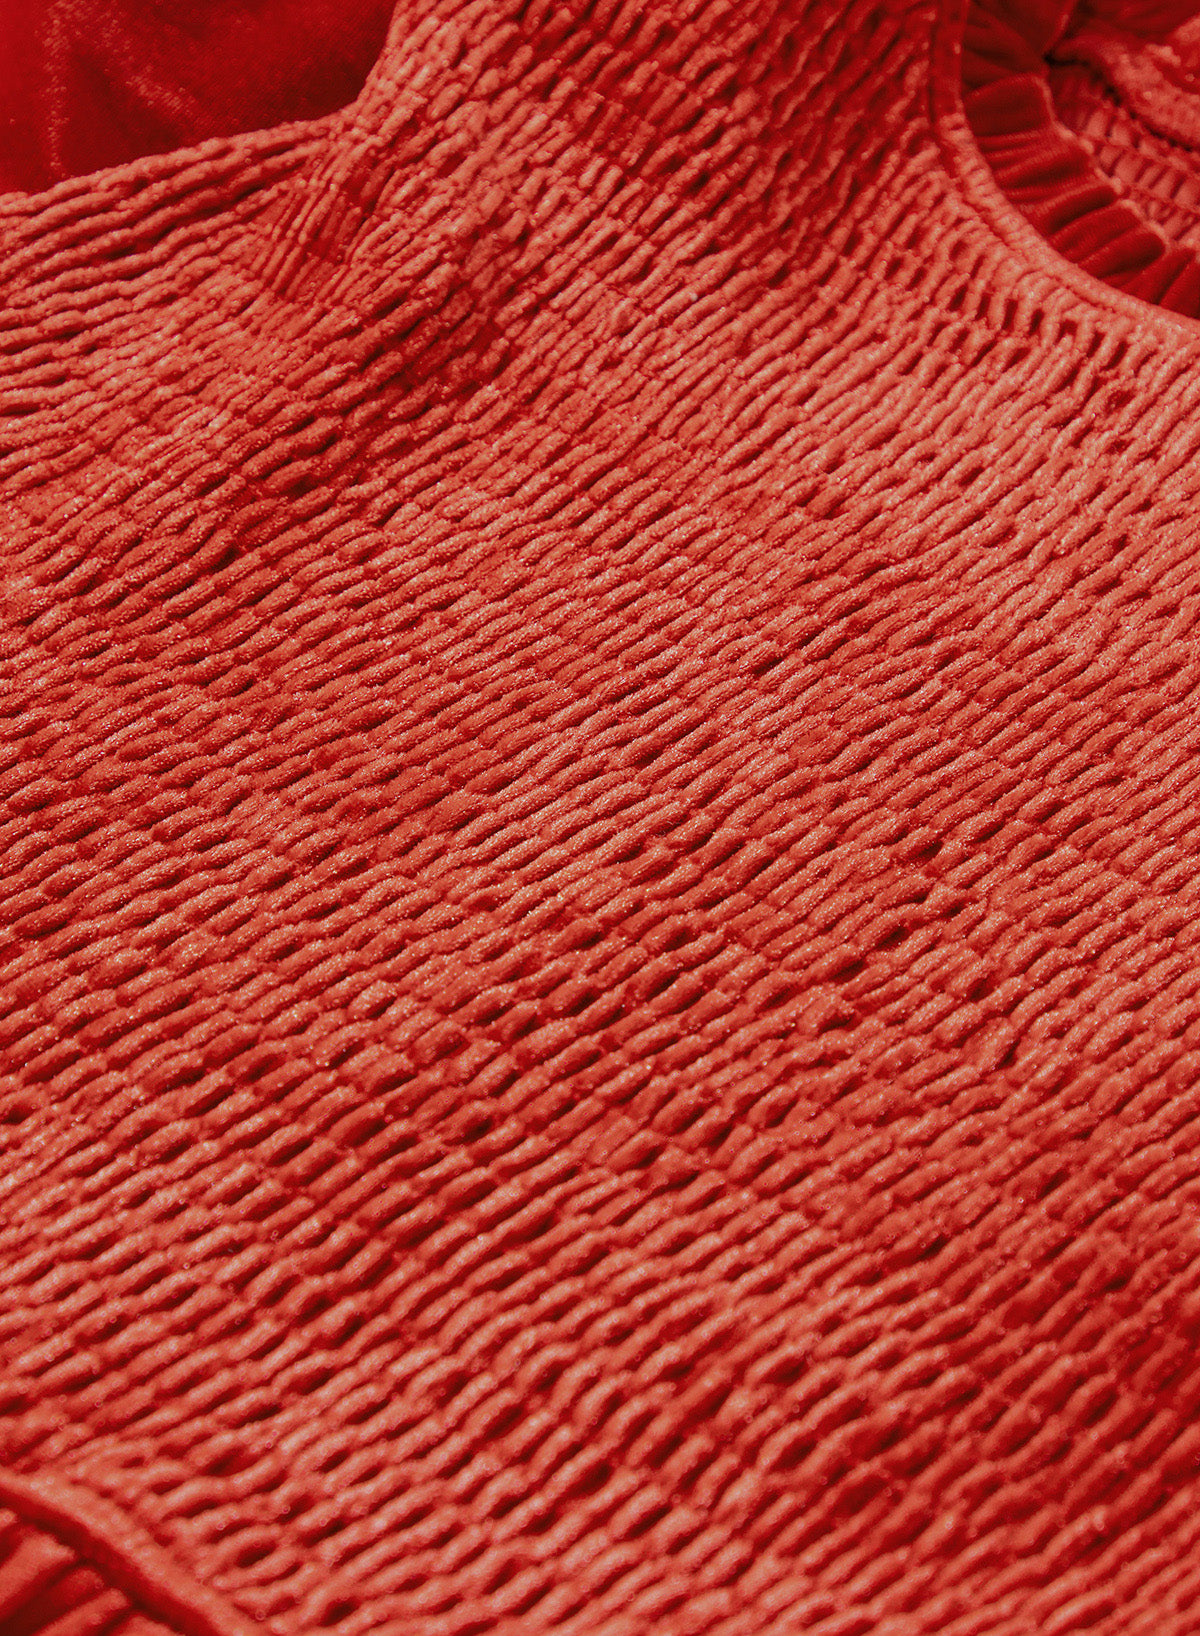 Rotes Samtkleid mit Rüschenhals und gesmoktem Oberteil aus Ton